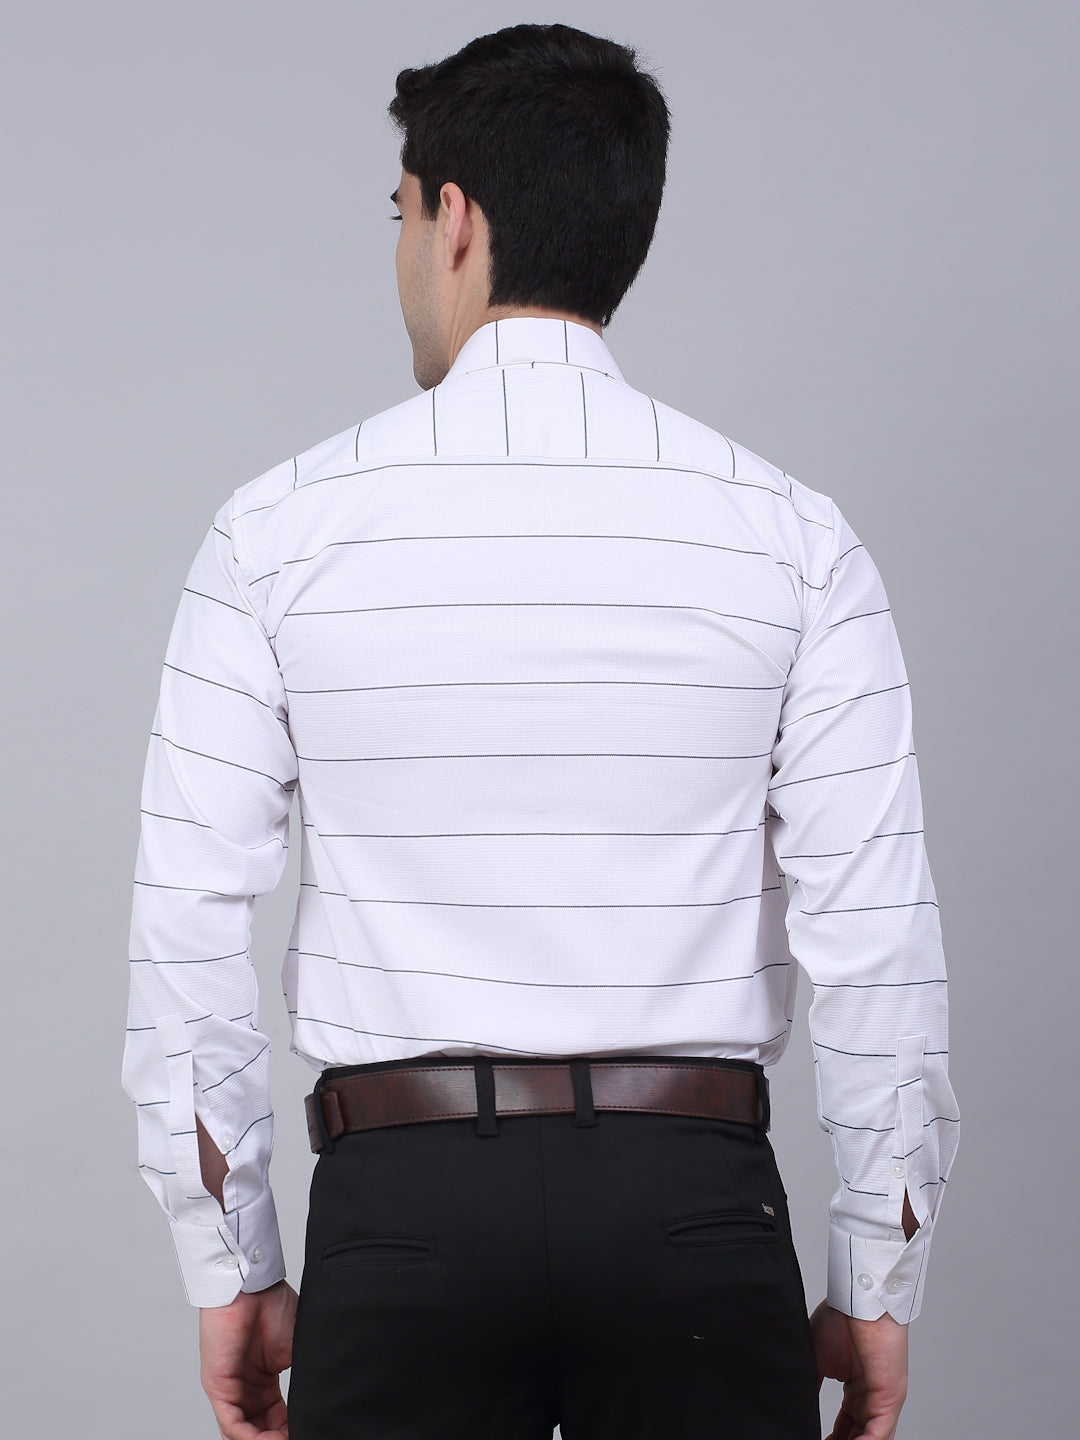 Jainish Men's White Horizontal Striped Formal Shirt - Distacart